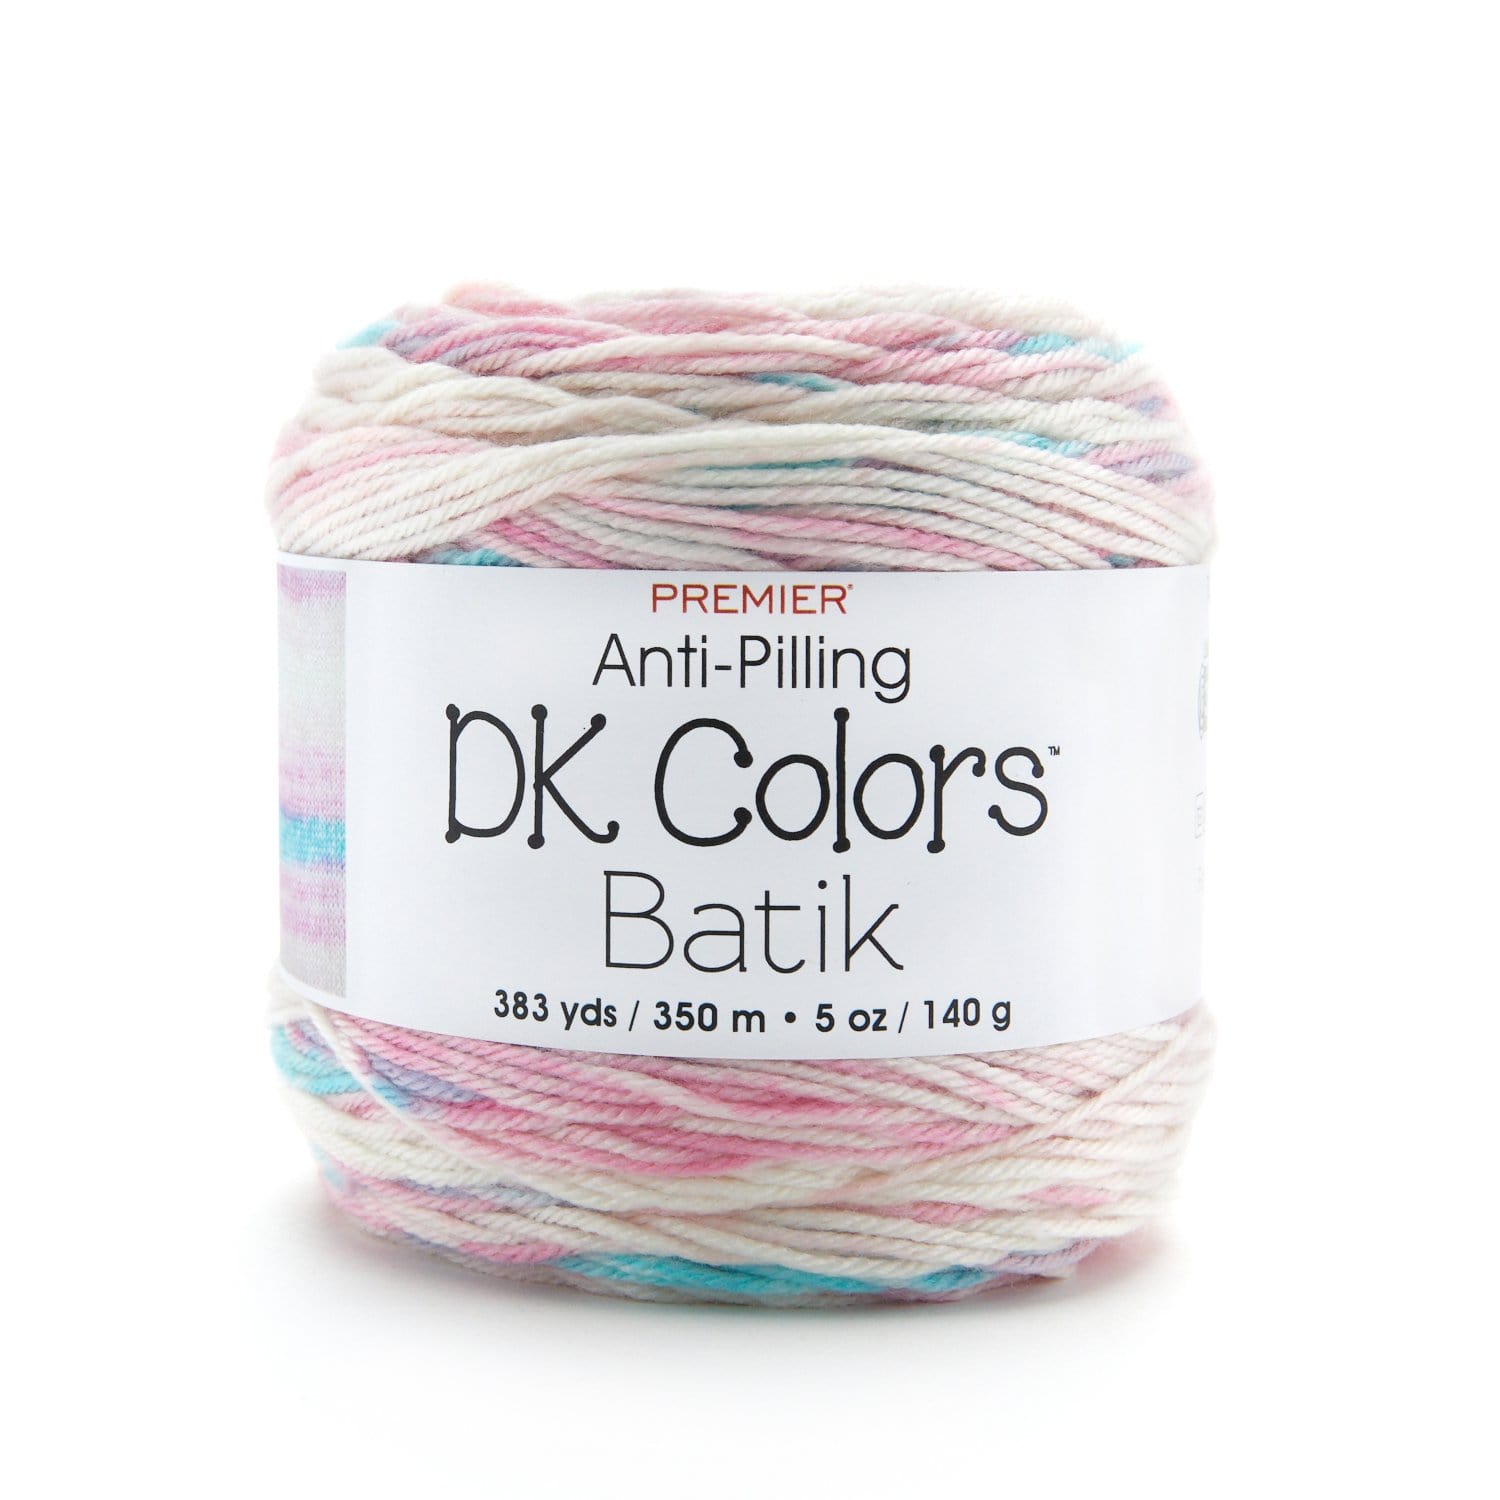 Image of Anti-Pilling DK Colors Batik